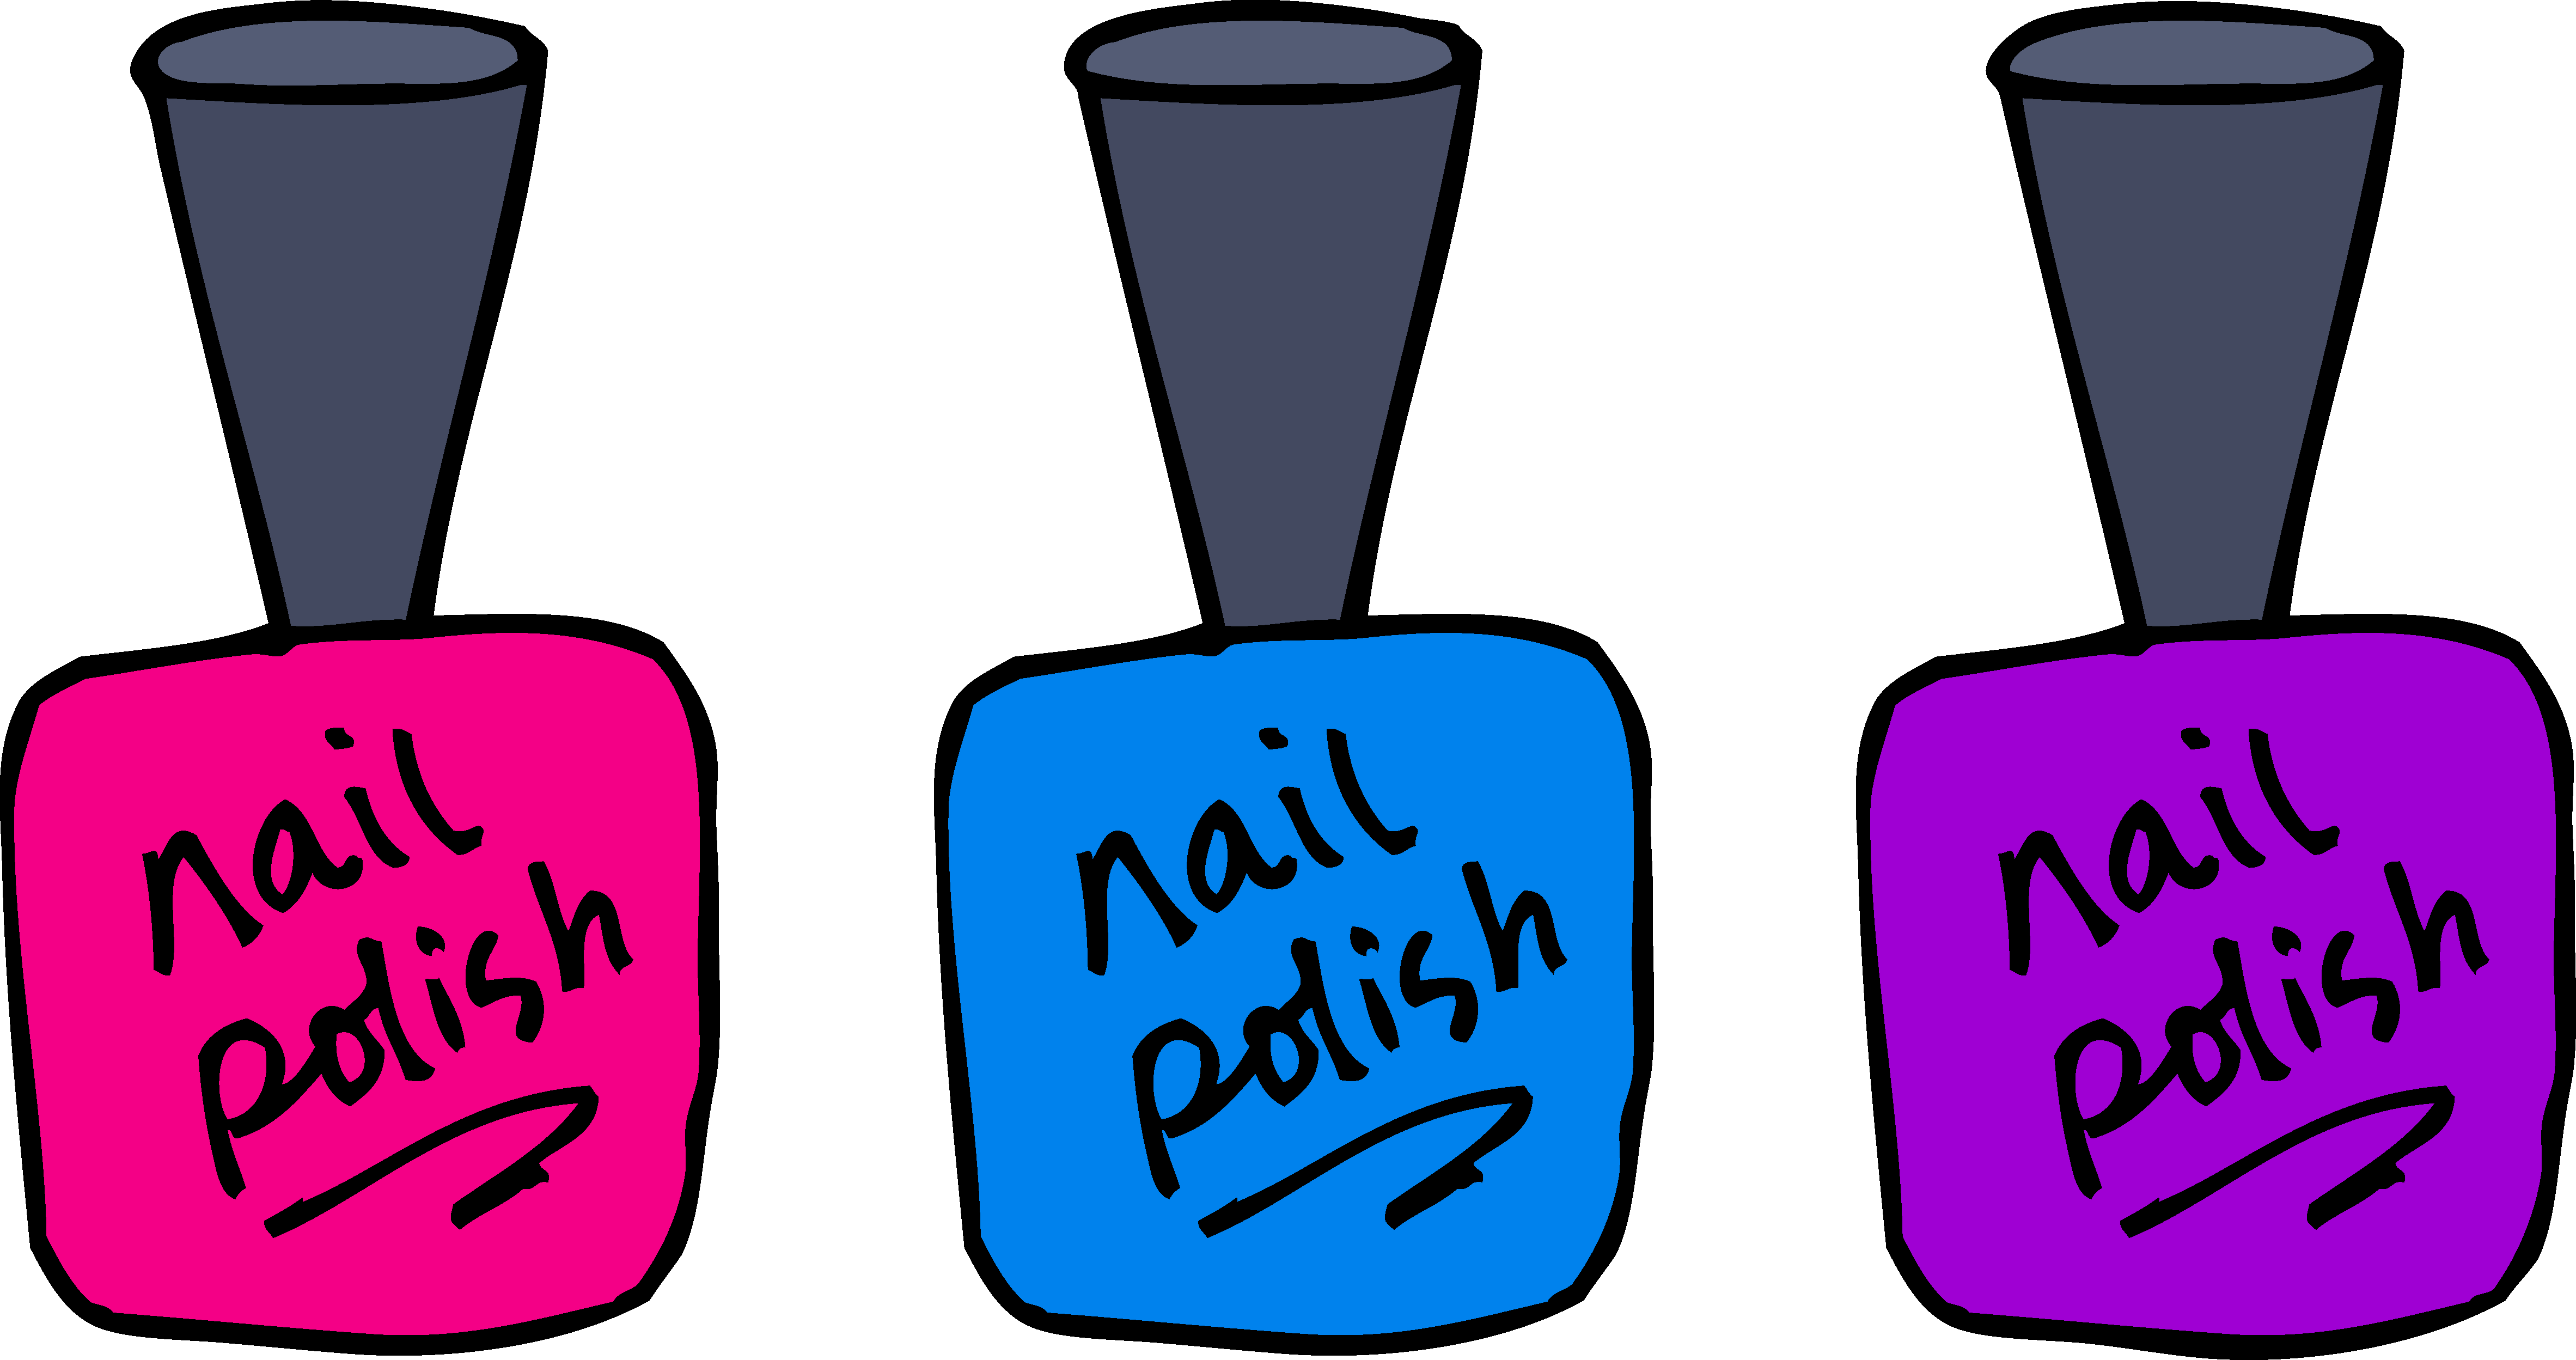 nail polish clip art